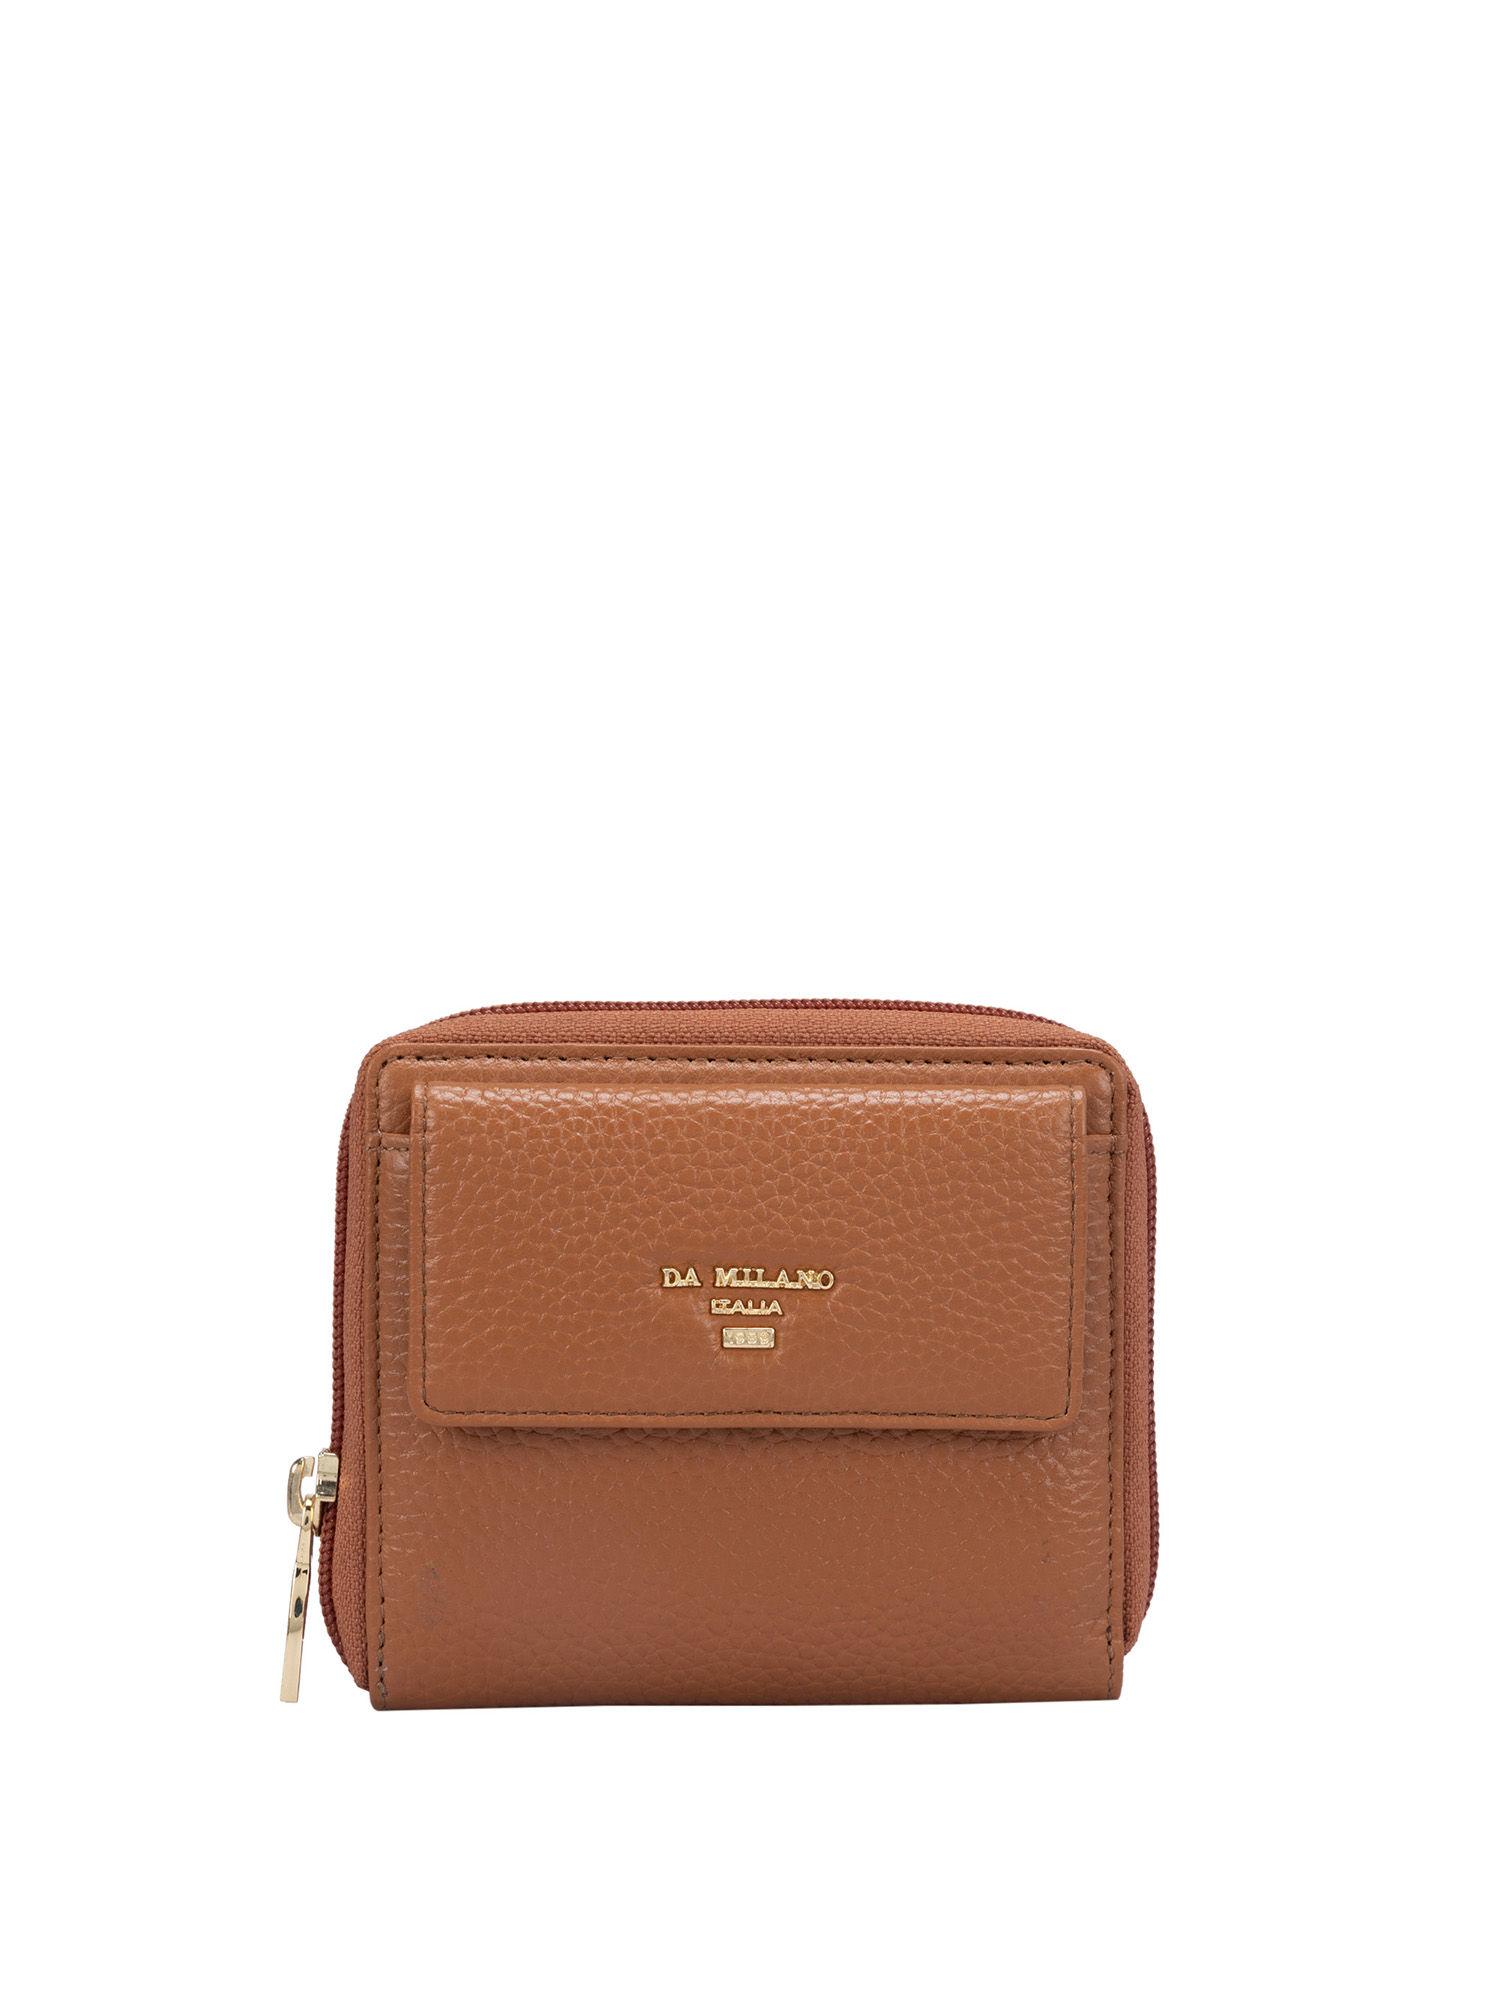 genuine leather brown ladies wallet